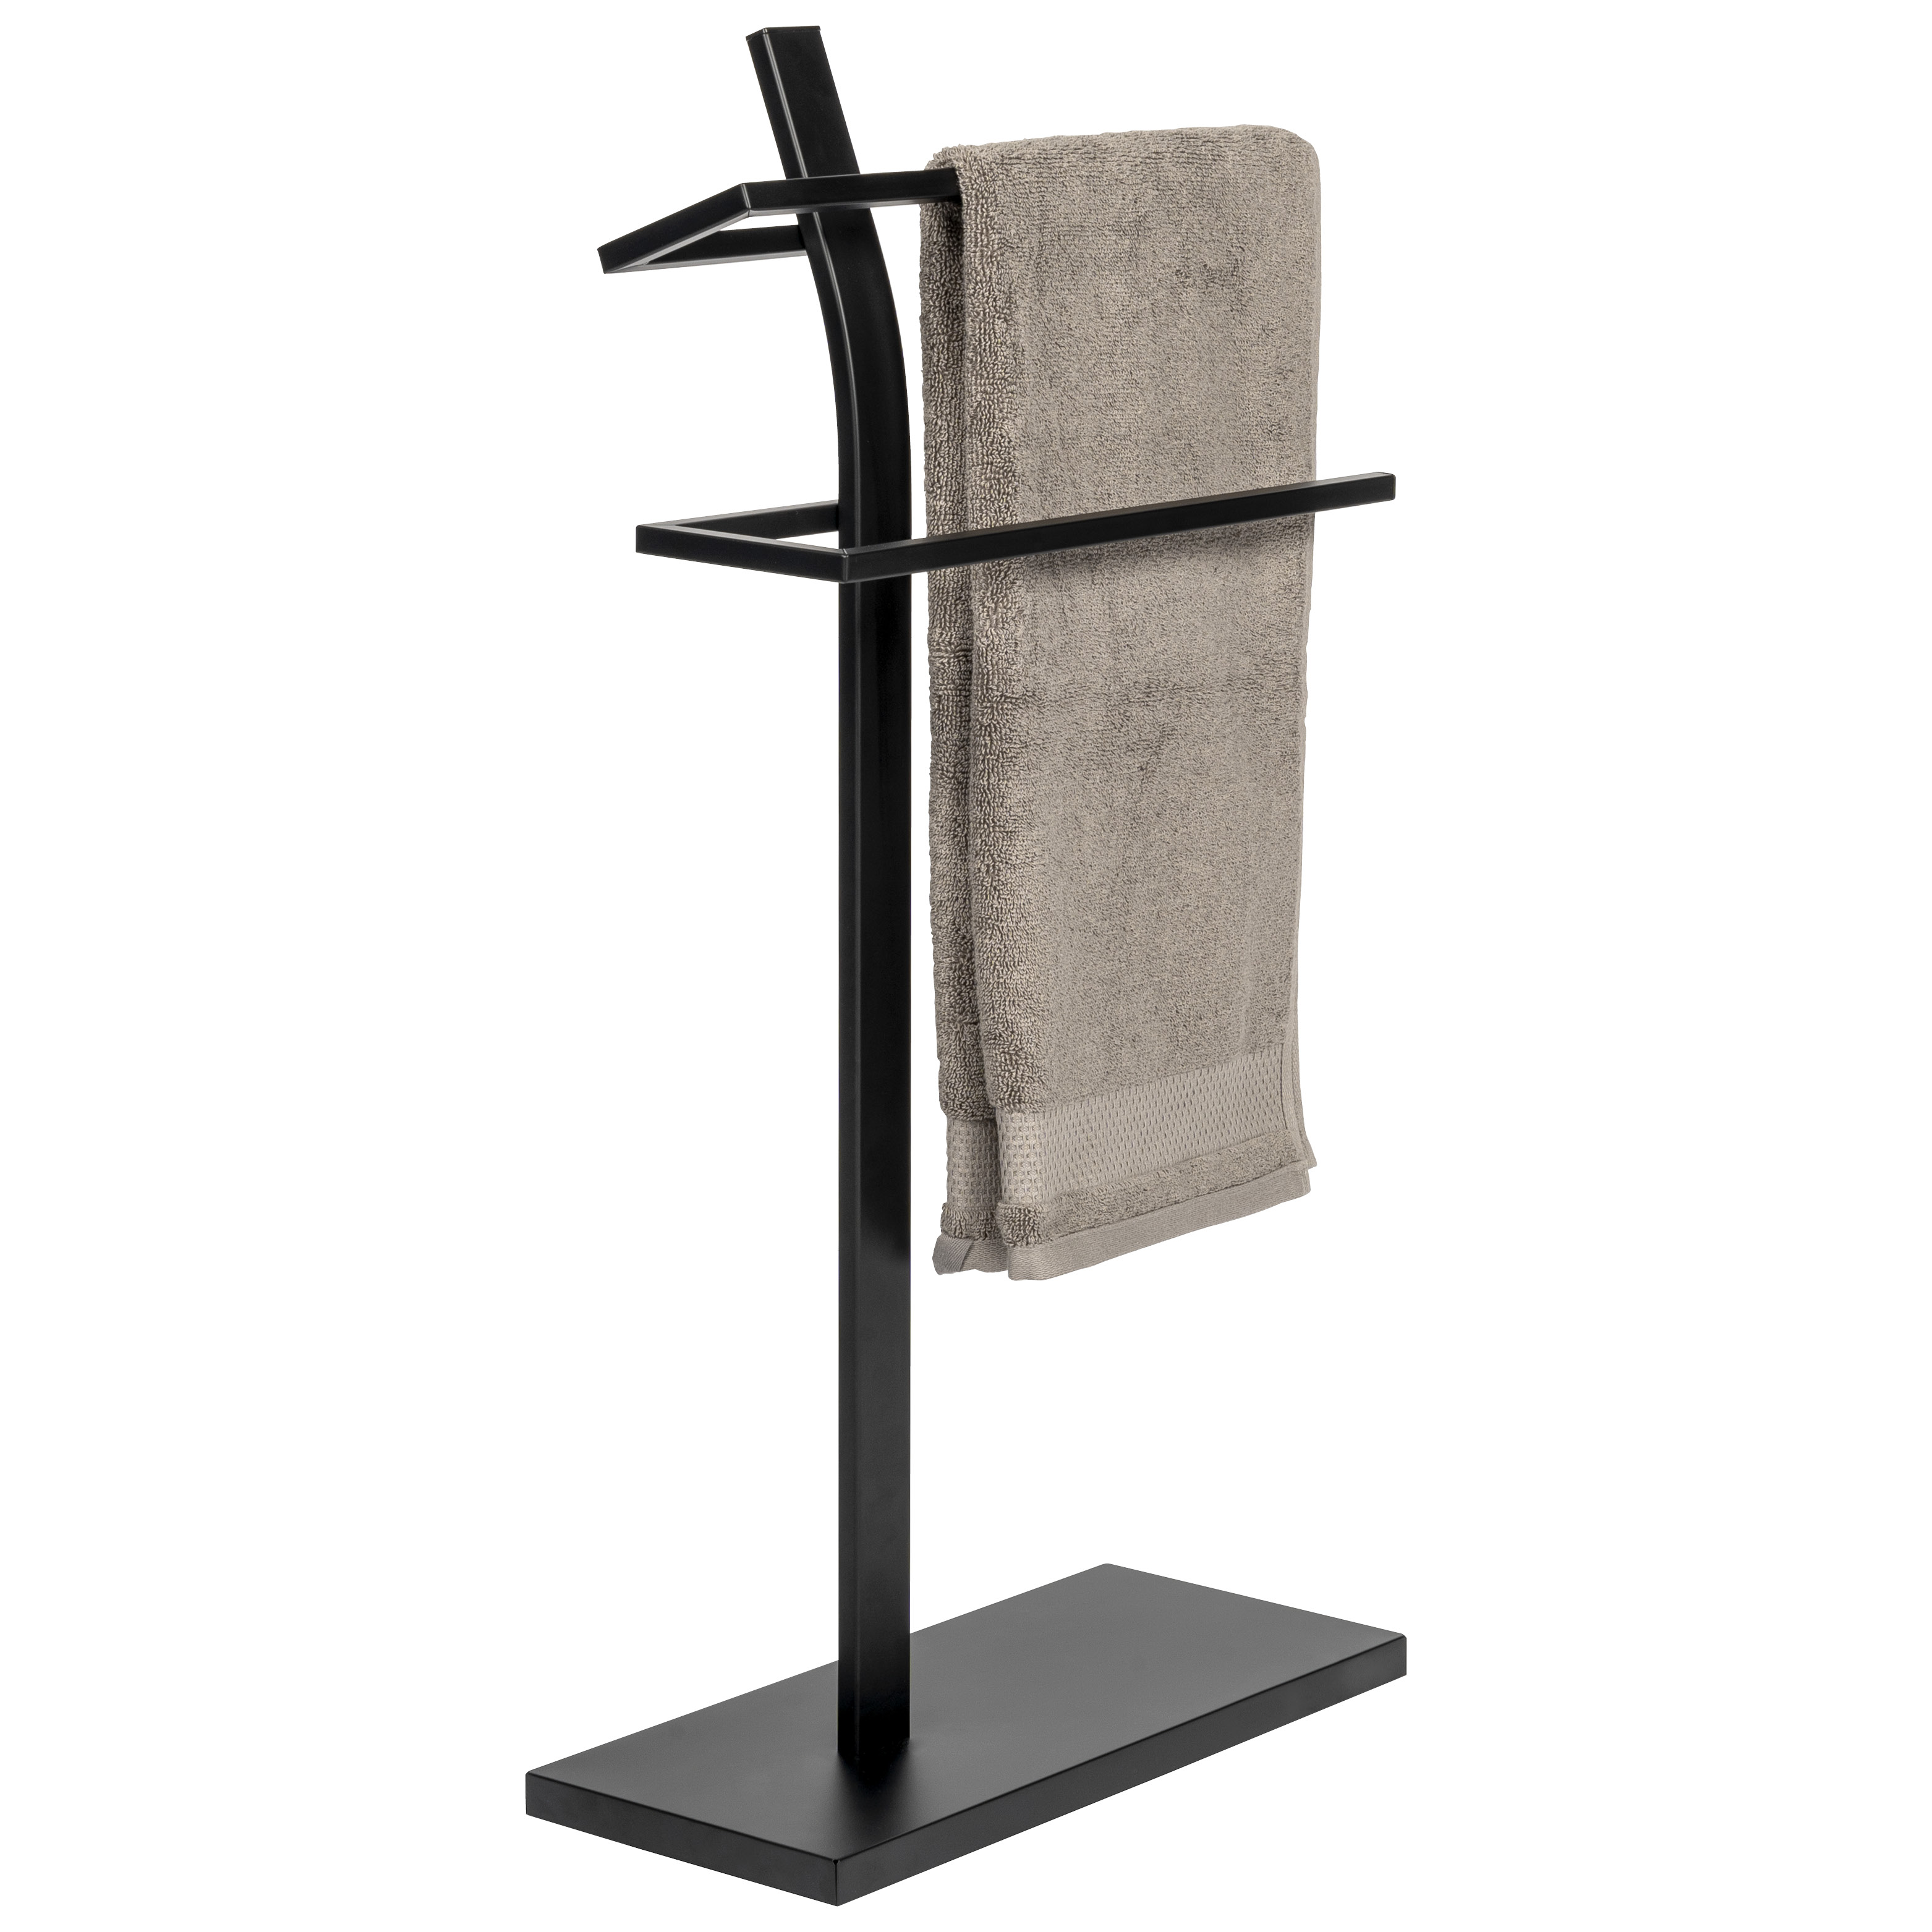 Stand-Handtuchhalter mattschwarz, Metall, freistehender Handtuchständer mit 2 Handtuchstangen ca. 42 x 19 x 81,5 cm (B/T/H)